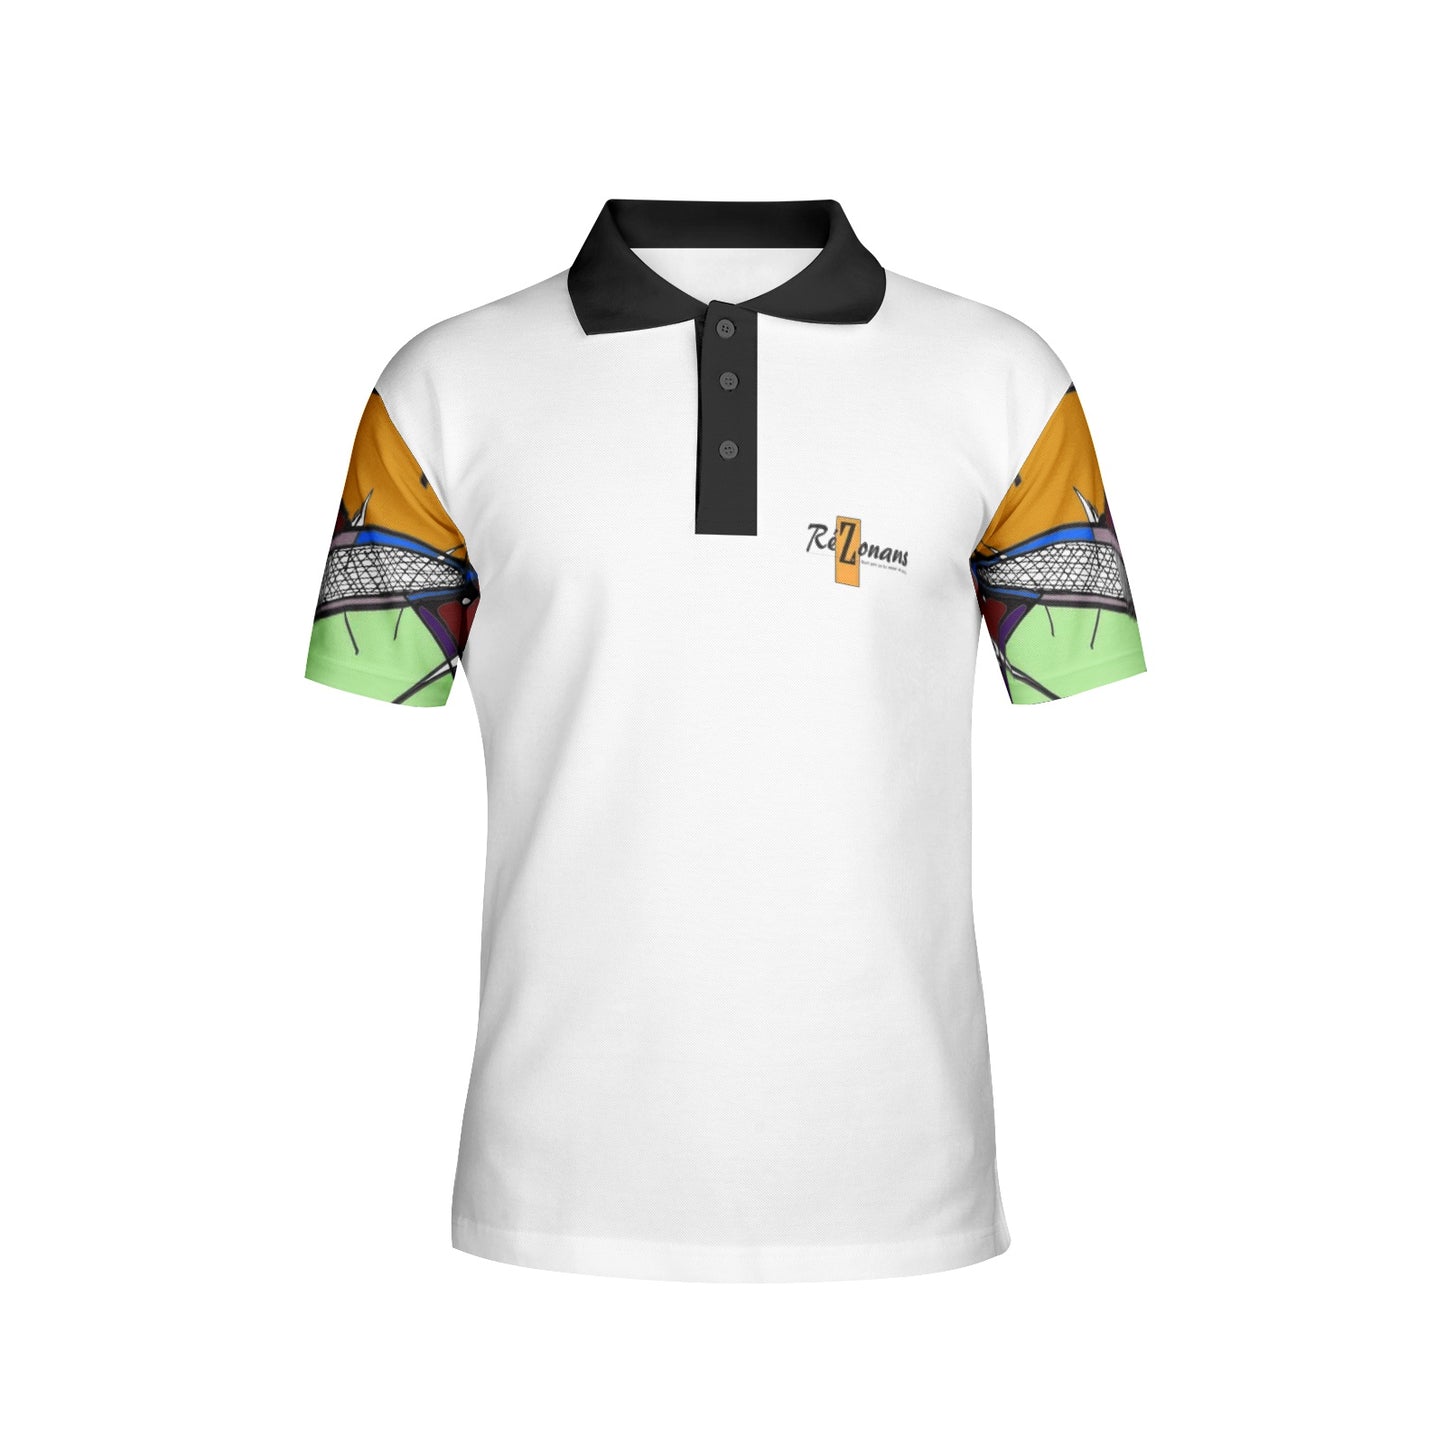 "Yolcolored" collector's polo shirt